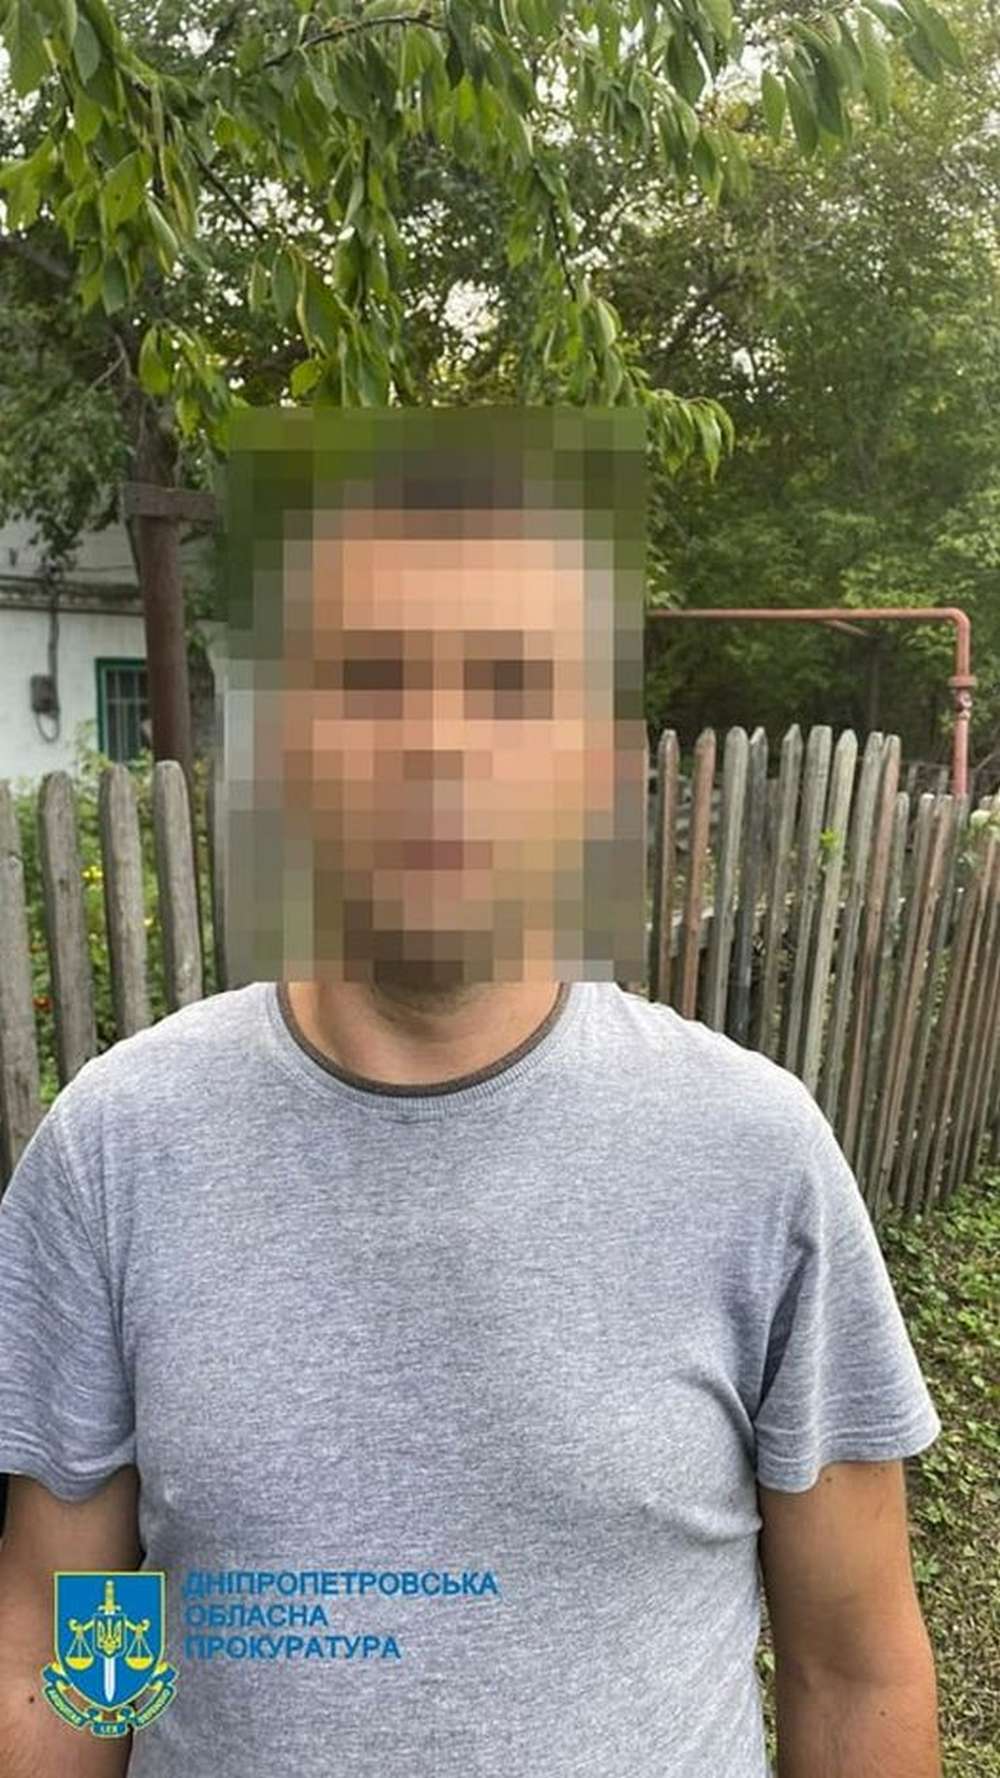 Найвища міра: на Дніпропетровщині судили чоловіка, який зґвалтував 8-річну дівчинку